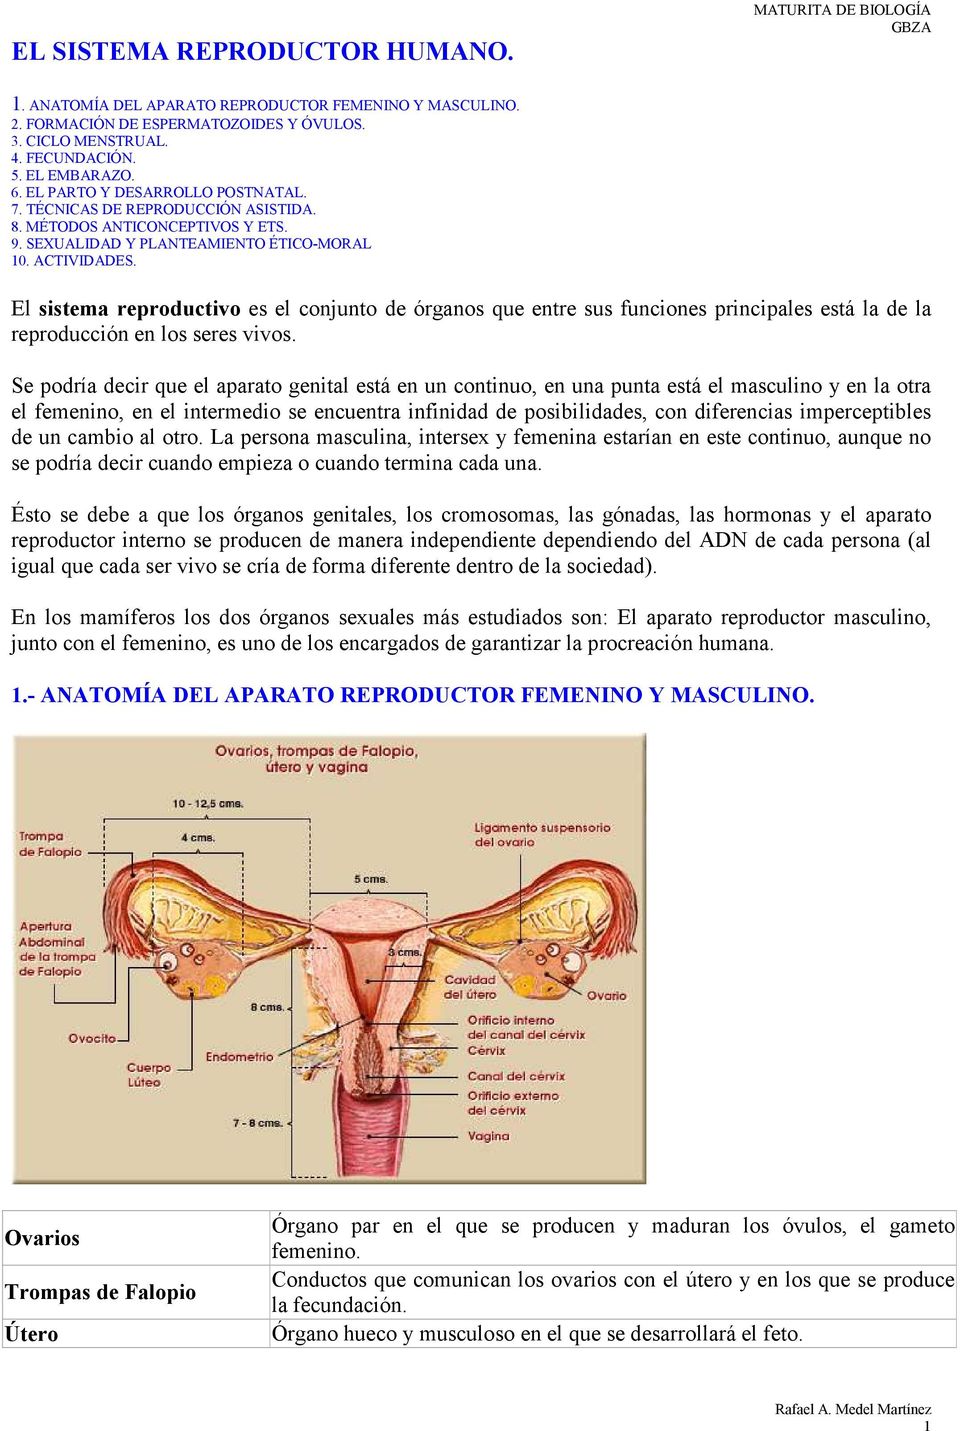 El sistema reproductivo es el conjunto de órganos que entre sus funciones principales está la de la reproducción en los seres vivos.